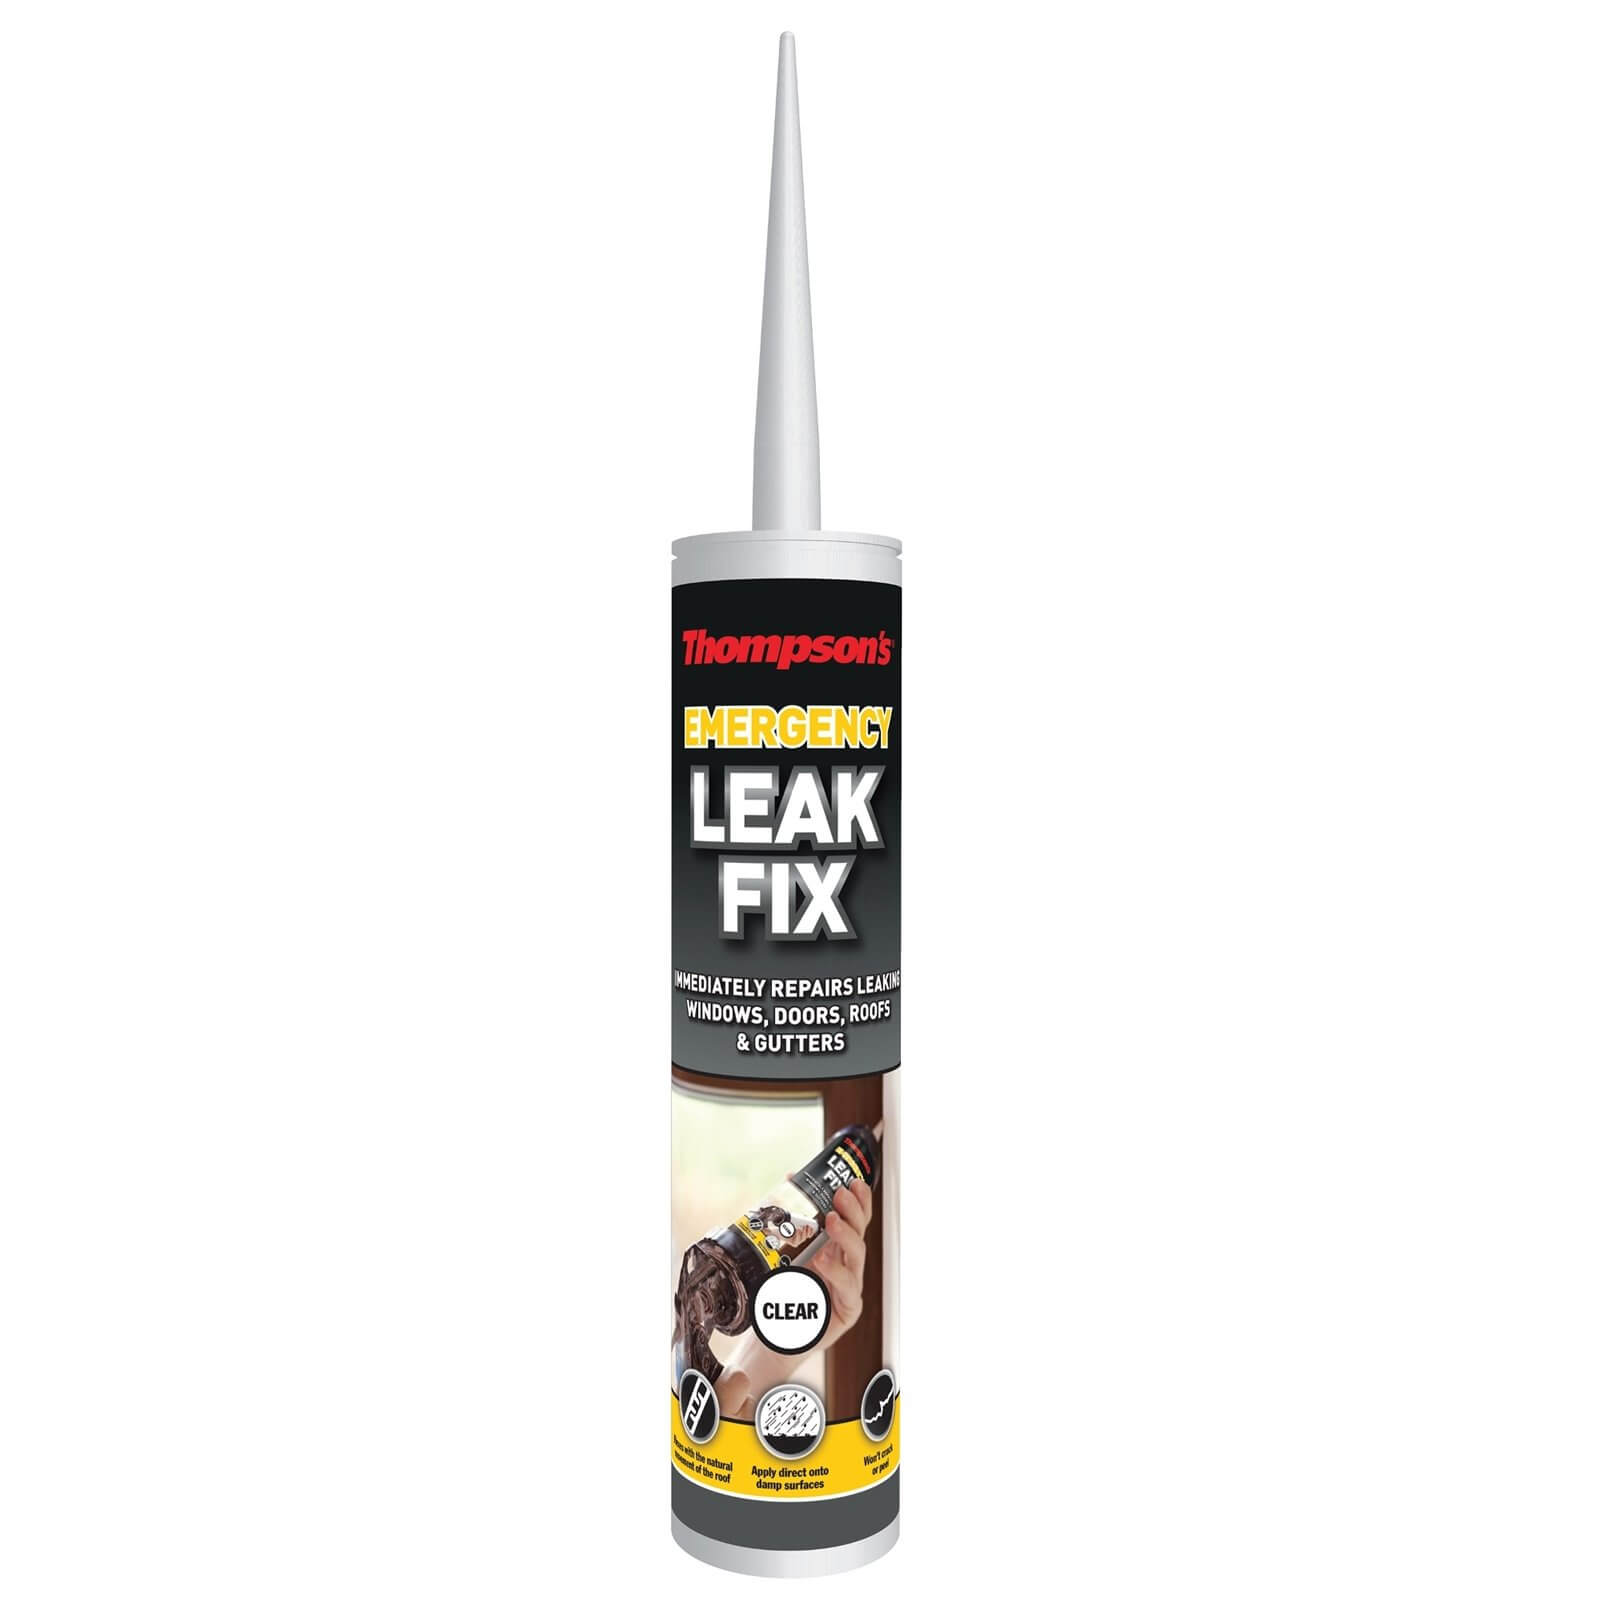 Thompson's Clear Emergency Leak Fix - 310ml